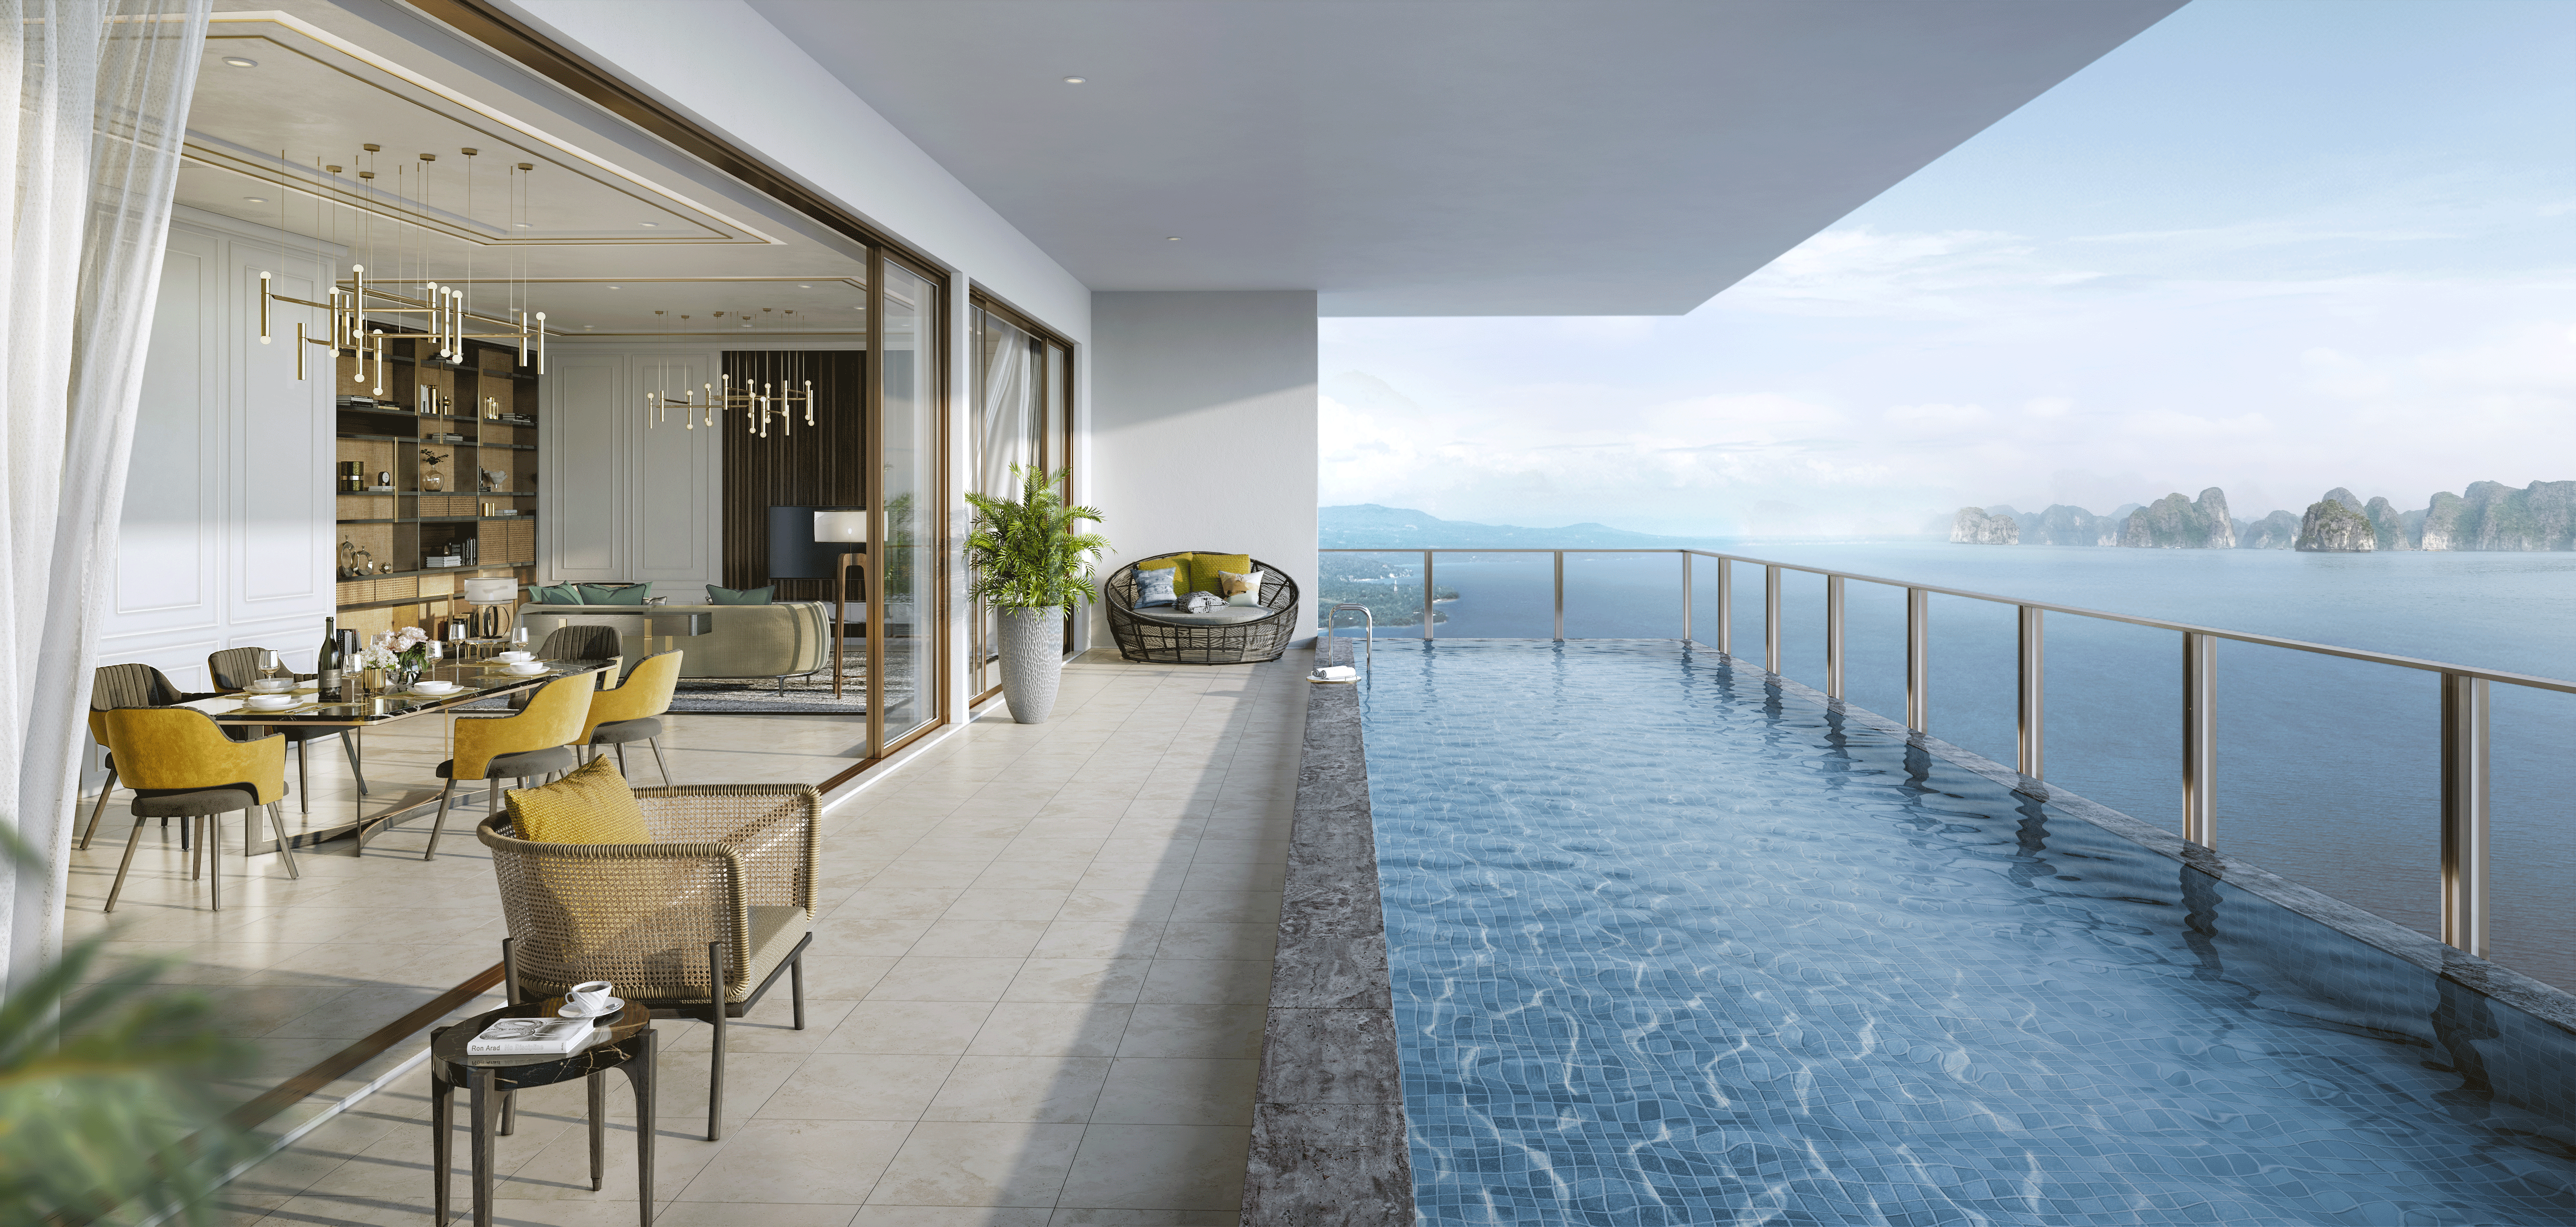 Biệt thự Sky Pool Villa thuộc dự án InterContinental Residences Halong Bay